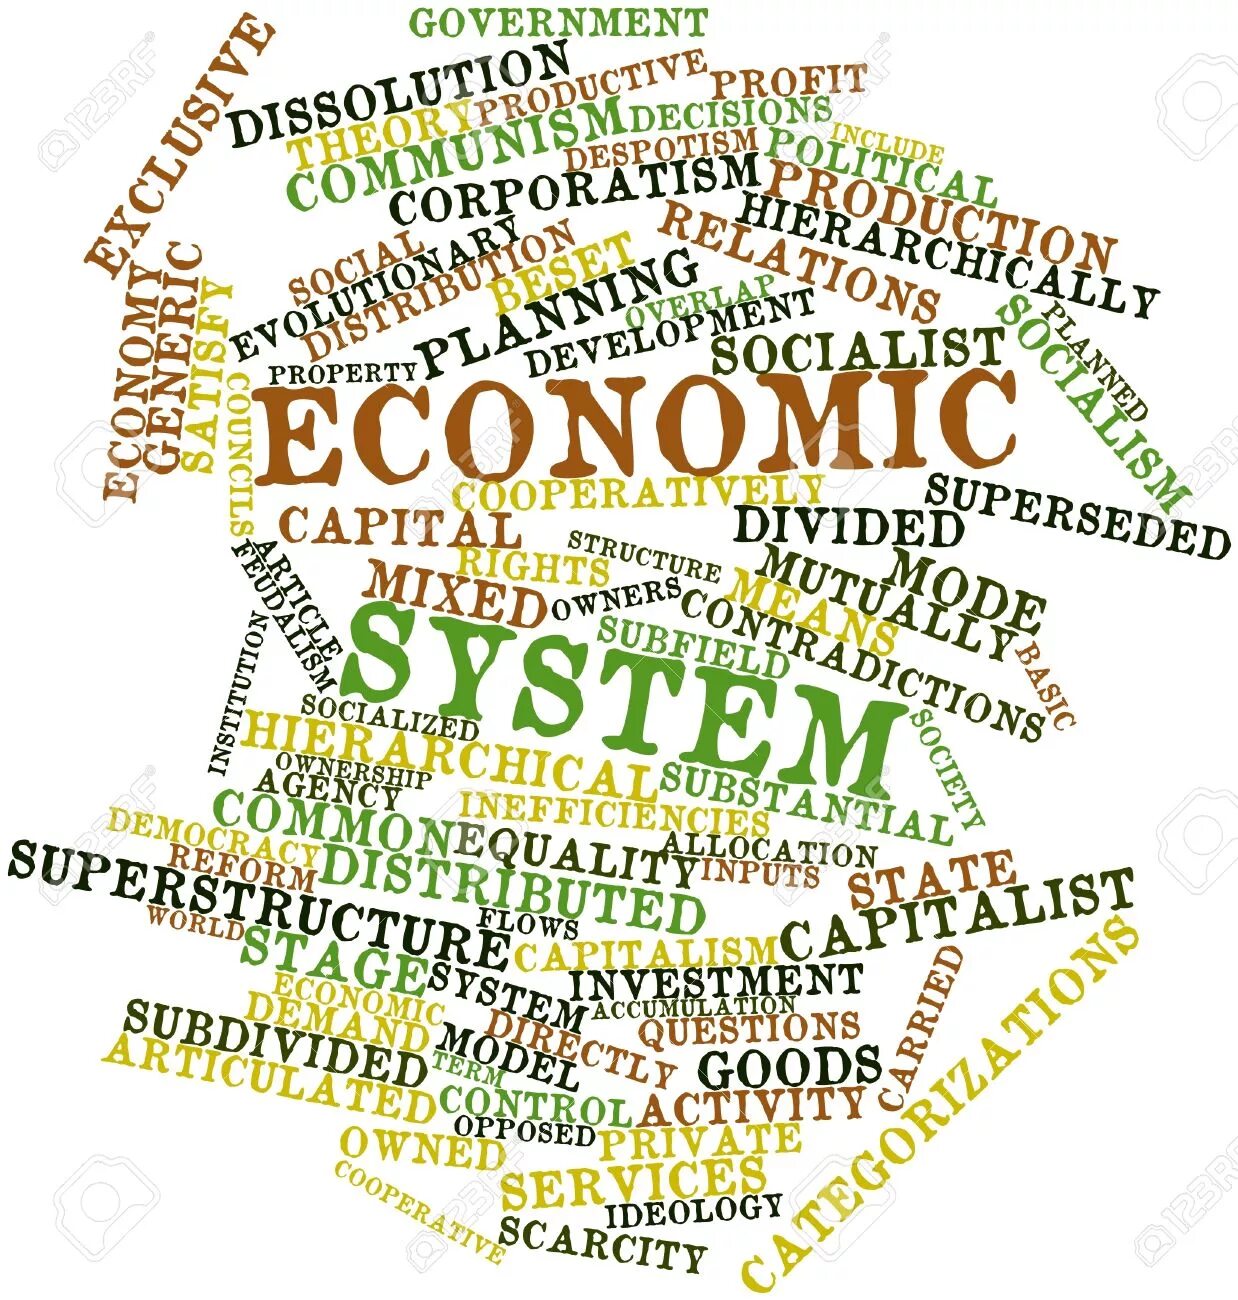 Economy system. The economic System. Economics Economics Systems. Economics энциклопедии. Economy Economics economic economical разница.